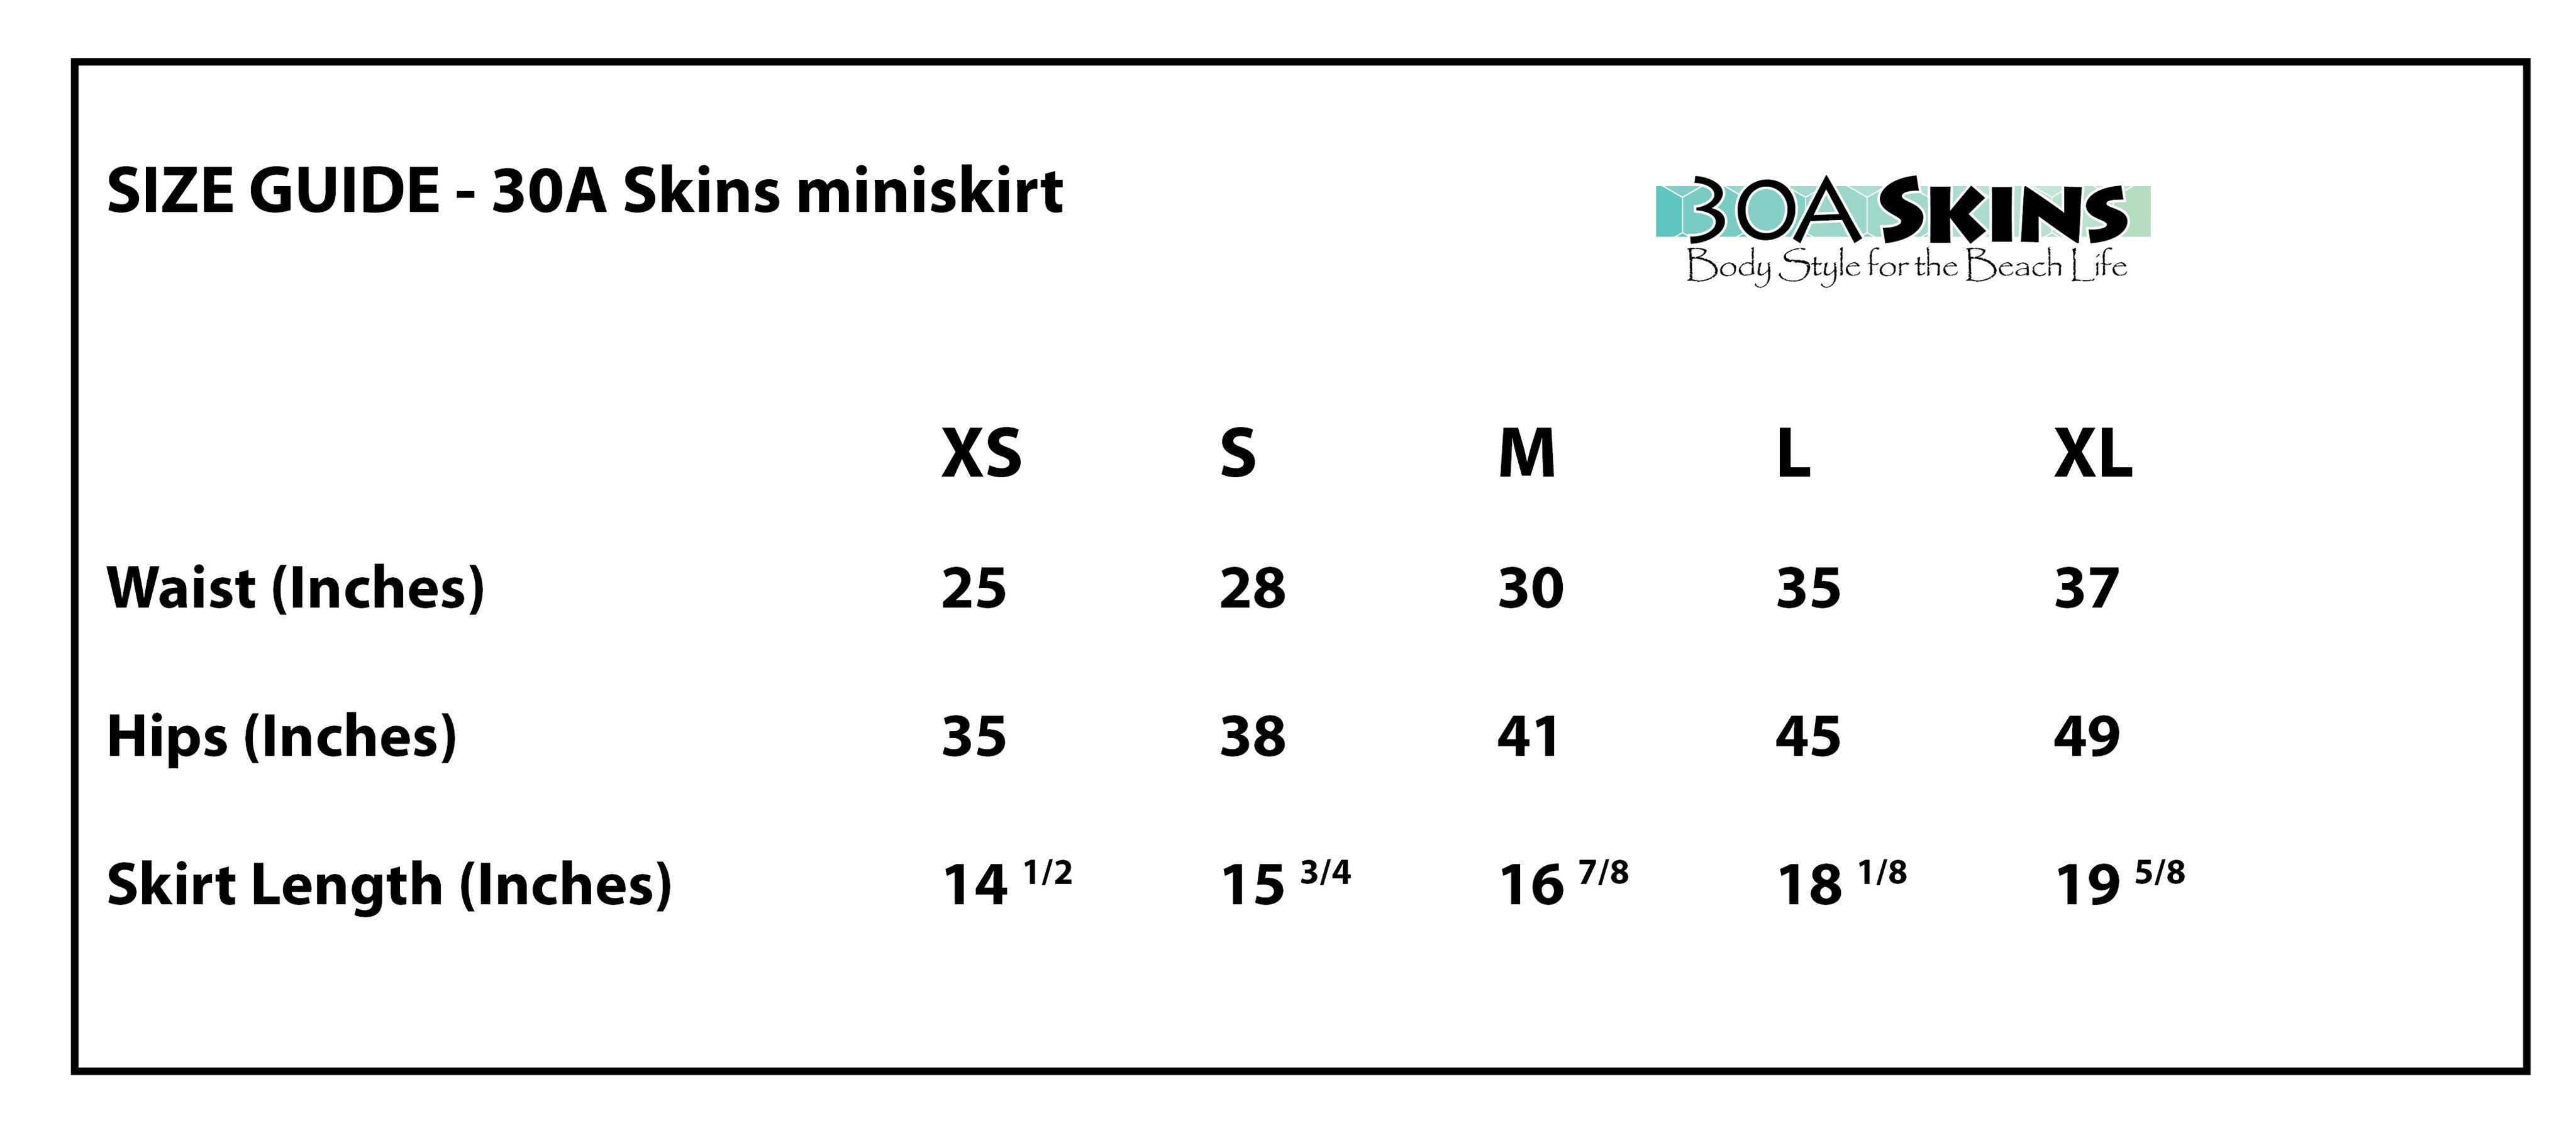 30a skins miniskirt sizing chart